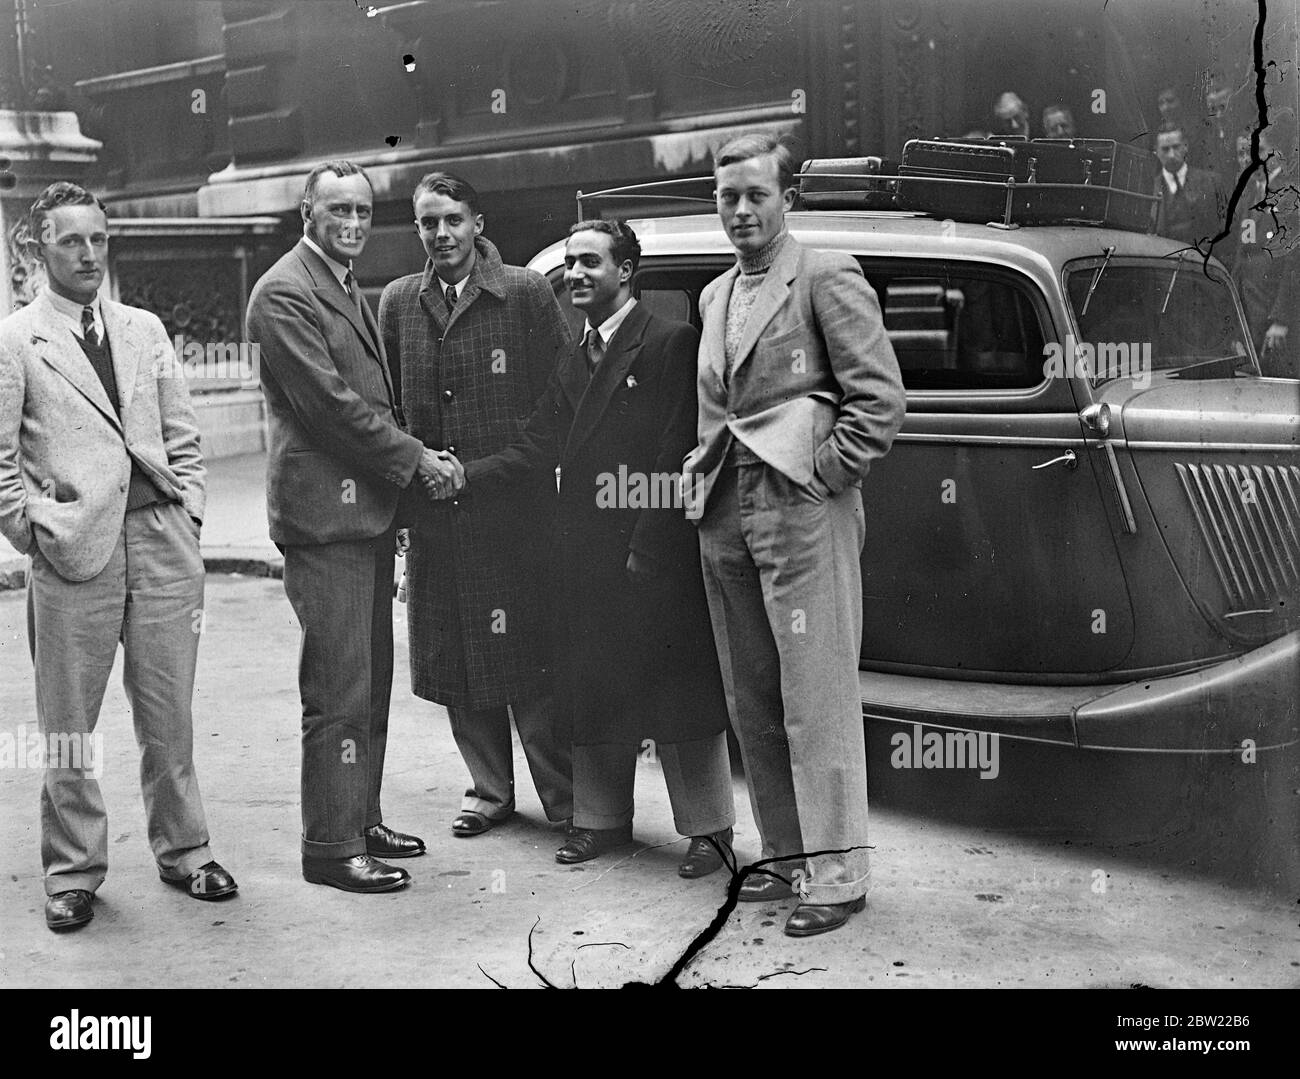 Vier englische Jungen begannen ihre neue Karriere in abenteuerlicher Art, als sie das Indien Büro in London verließen, um mit dem Auto den ganzen Weg nach Kalkutta zu reisen, um Positionen im indischen Zivildienst zu übernehmen. S. K. Brown (zweiter von links) Stellvertretender Unterstaatssekretär für Indien, der den Jungs die Hände schüttelt, als sie London verließen (von links nach rechts): A W Flack, T. N. Kaul, F. A. Sharpe und P. F. Adams, die ihr Auto mit Benzin beladen, bevor sie London verlassen. 21. September 1937. Stockfoto